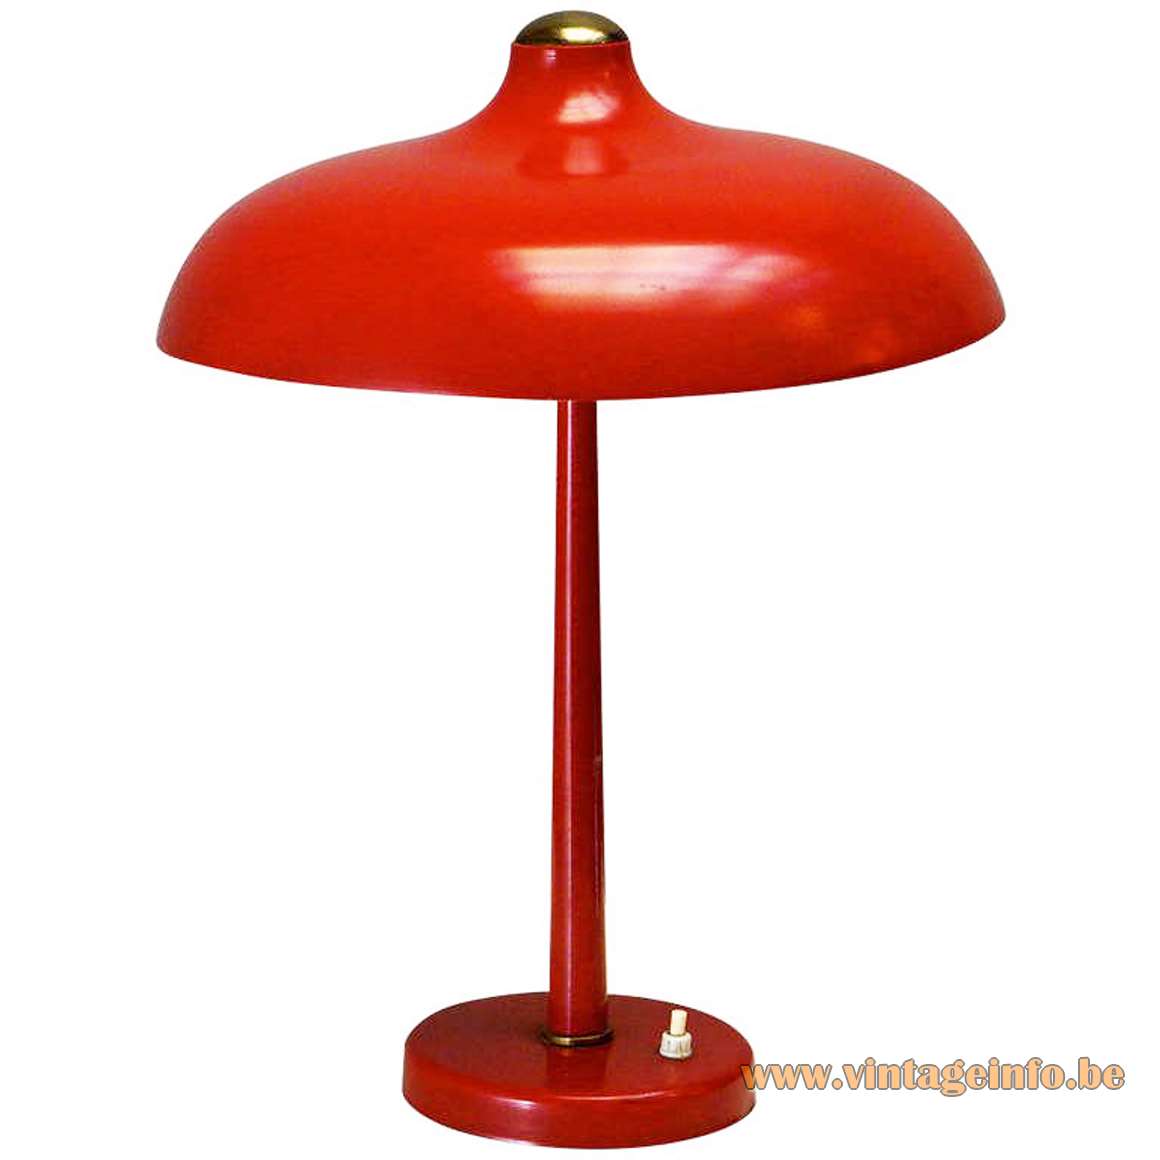 Red mushroom desk lamp round metal base conical rod aluminium lampshade 1950s 1960s Massive Belgium